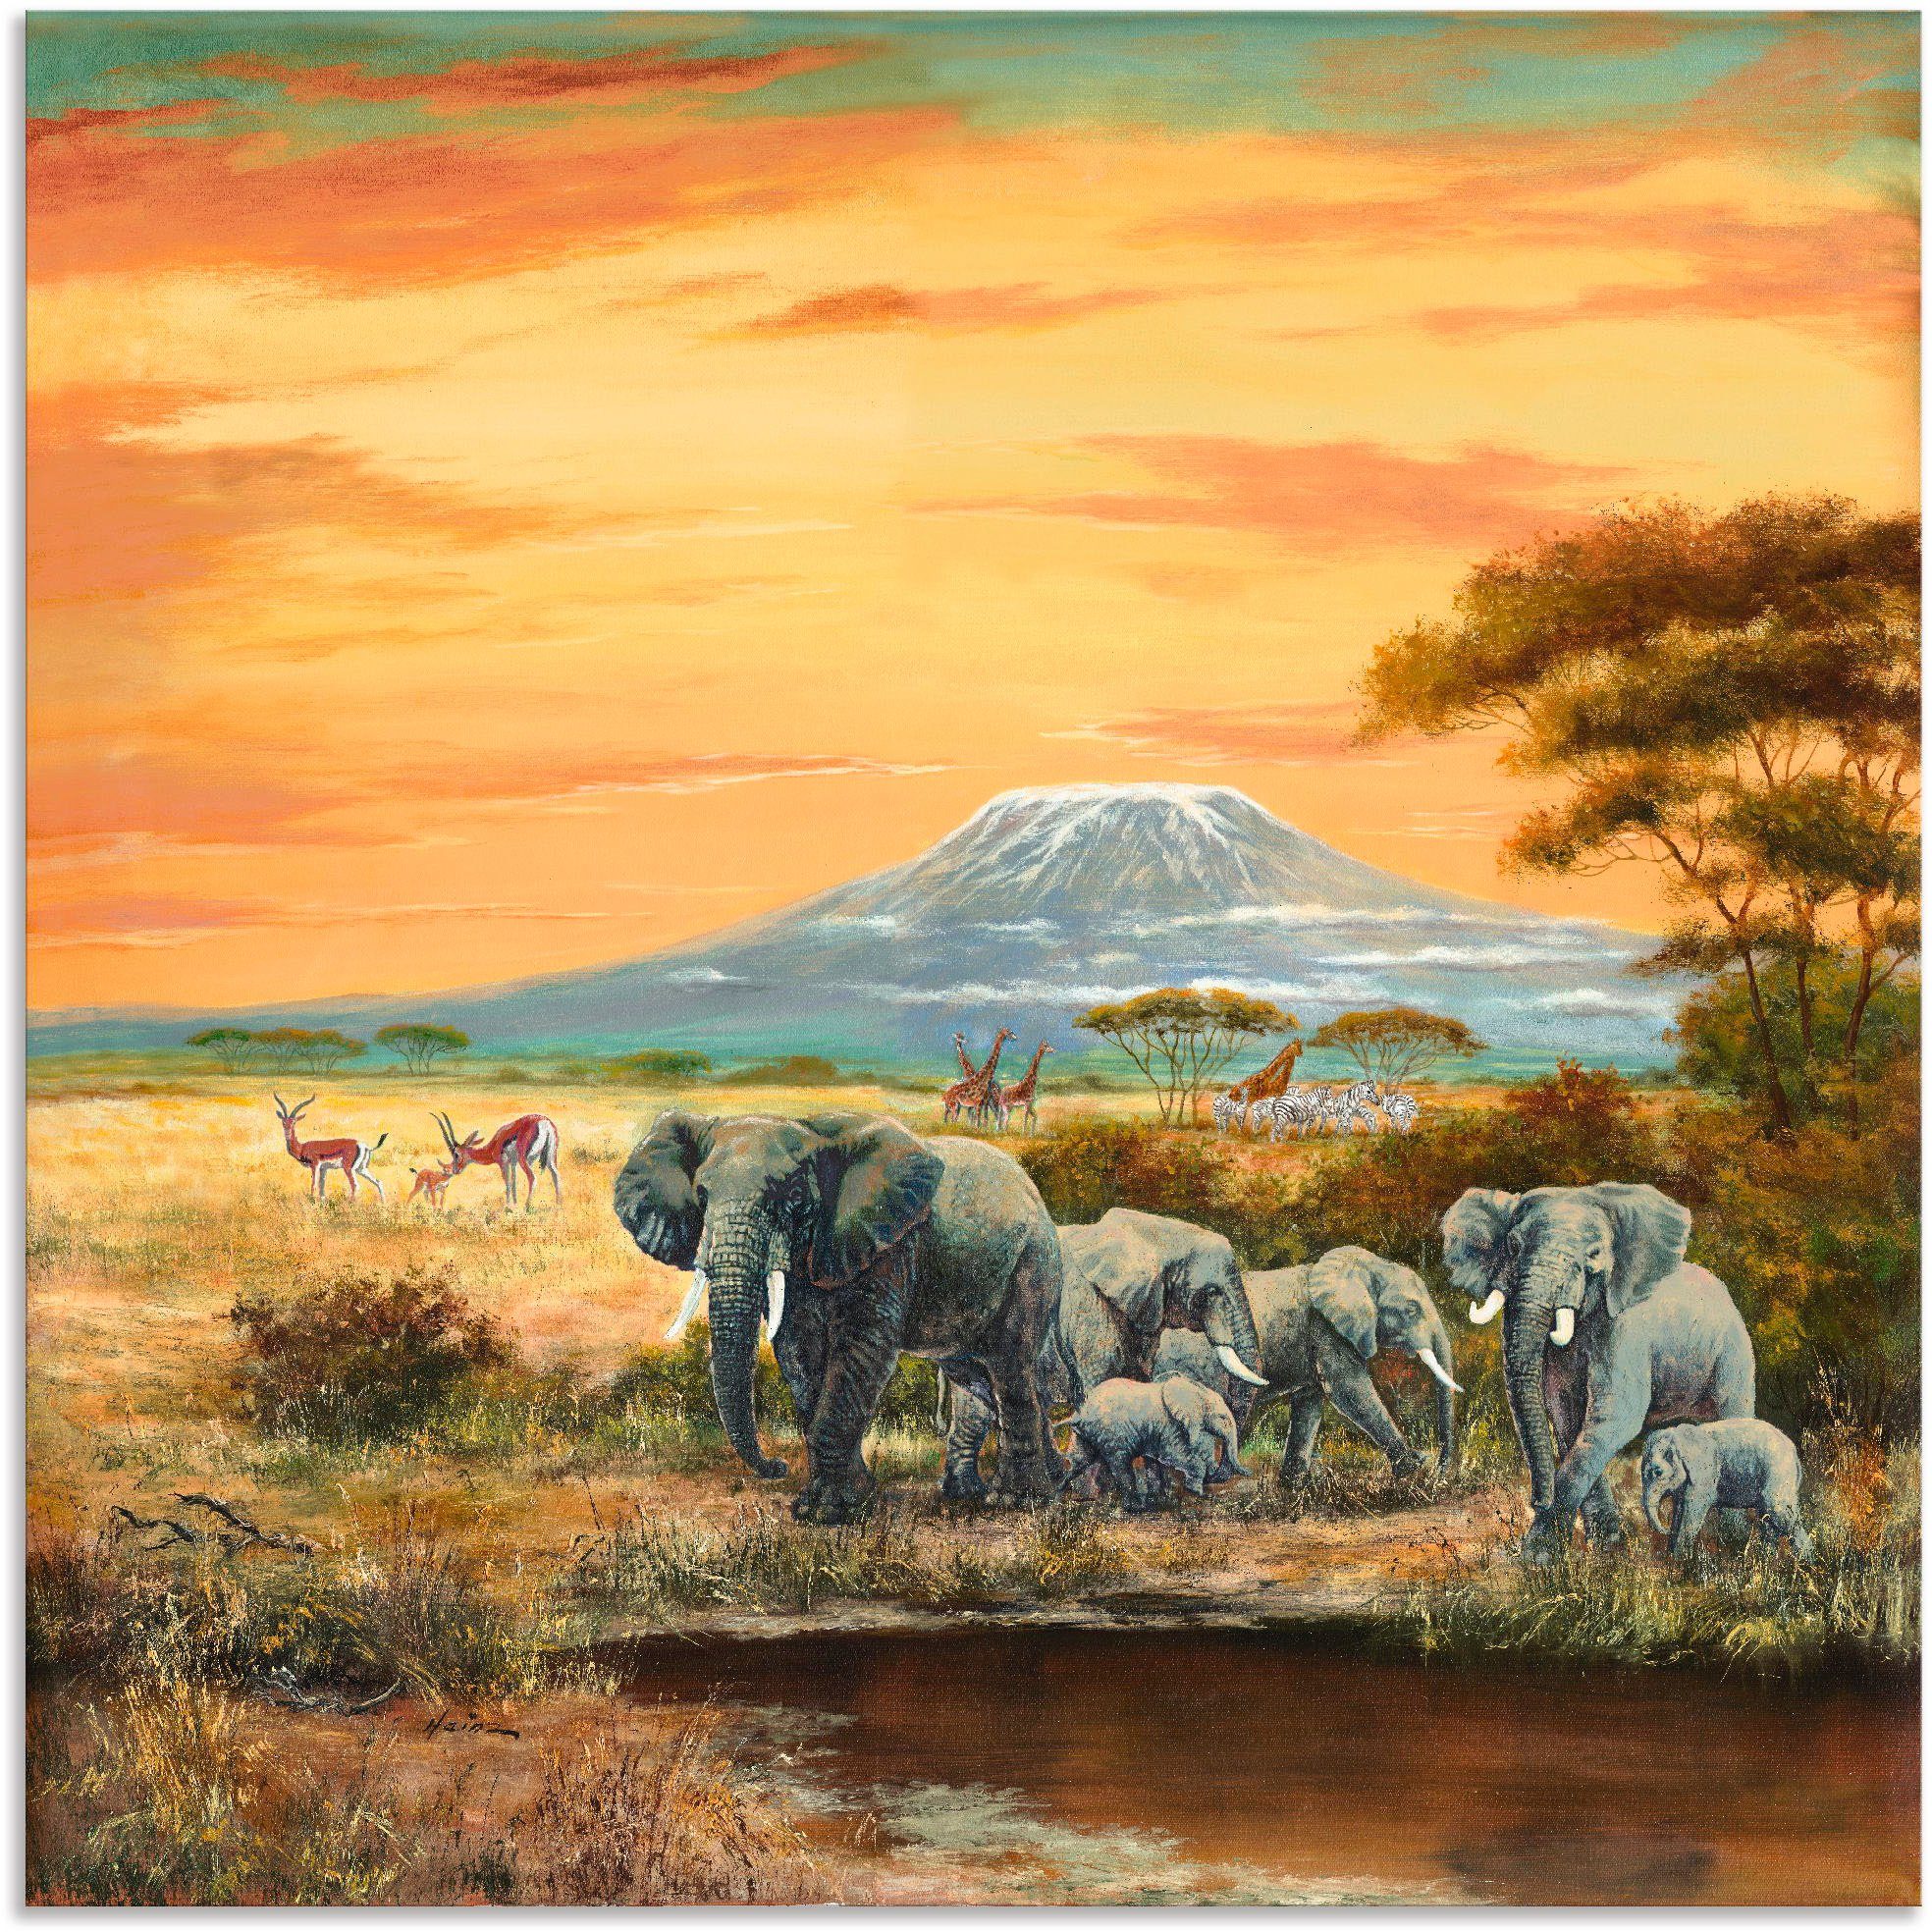 Artland Artprint Afrikaans landschap met olifanten in vele afmetingen & productsoorten - artprint van aluminium / artprint voor buiten, artprint op linnen, poster, muursticker / wa